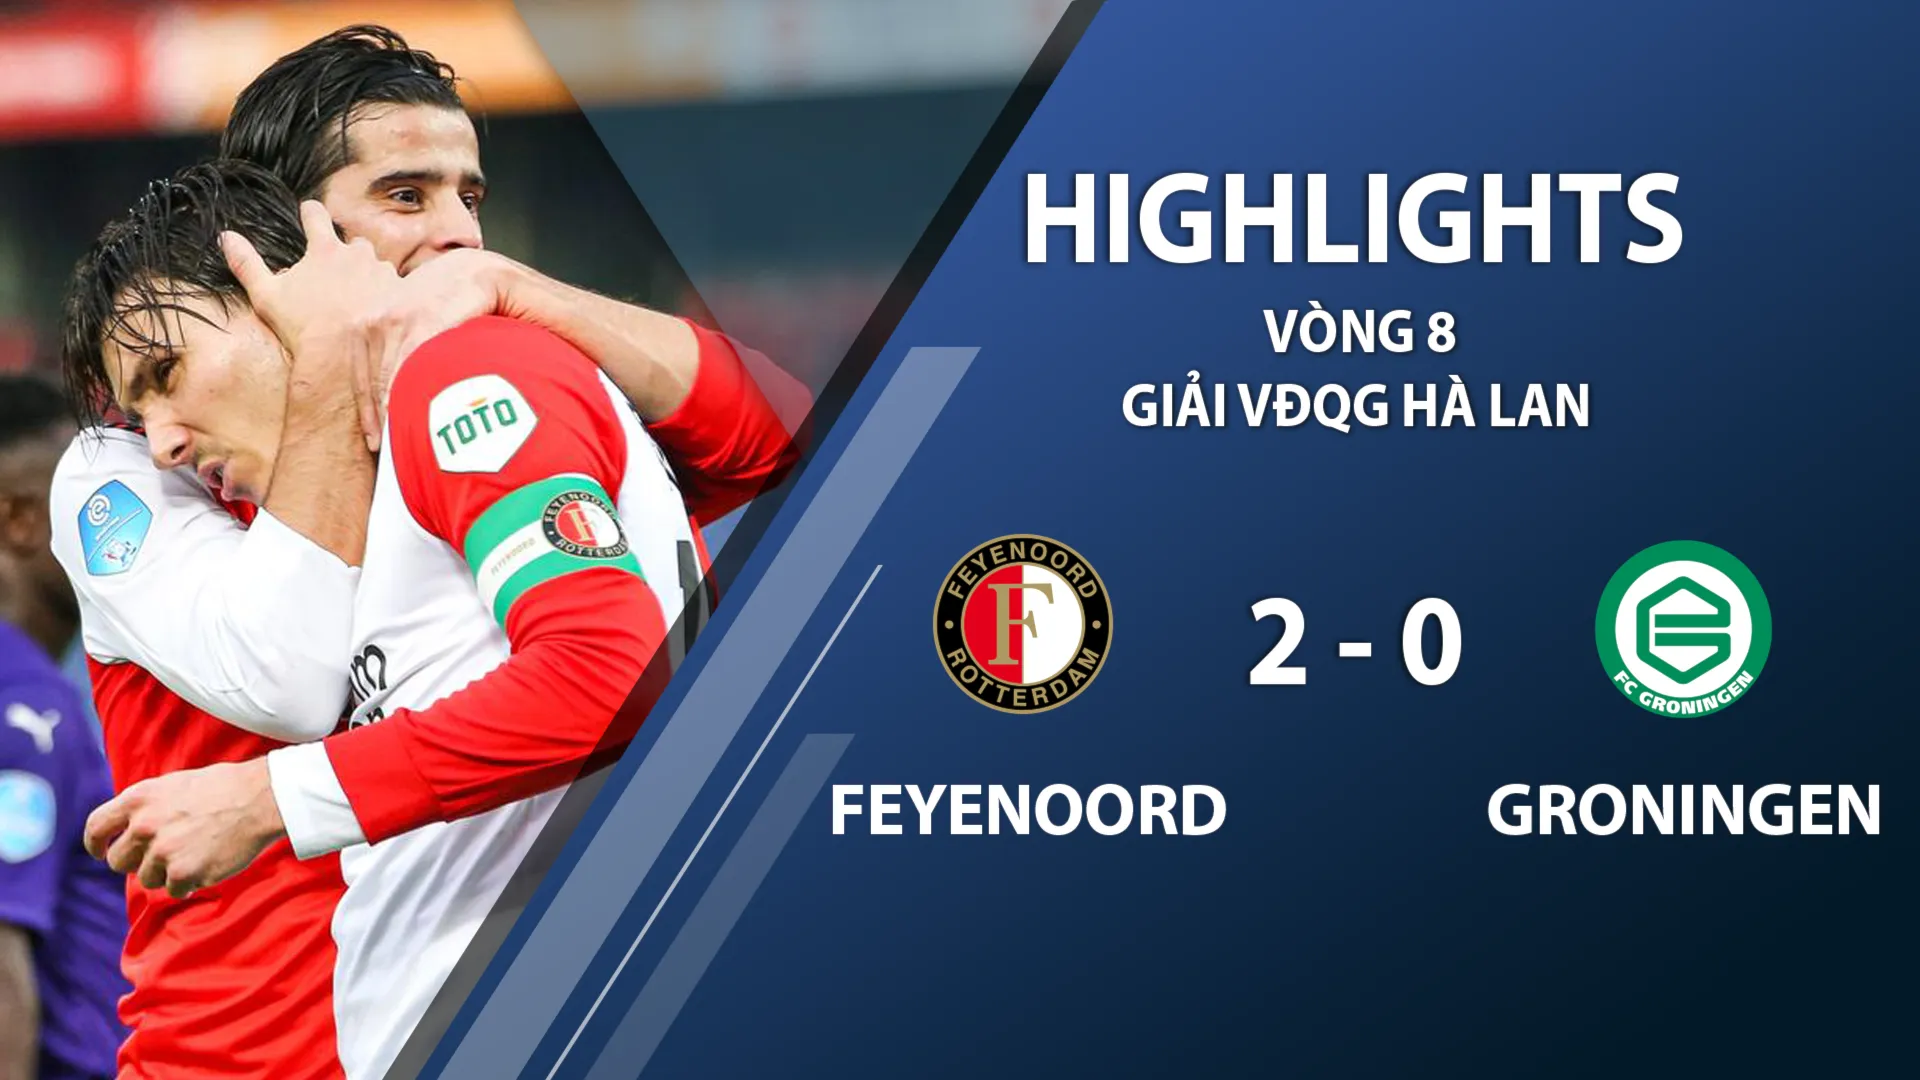 Highlights Feyenoord 2-0 FC Groningen (vòng 8 giải VĐQG Hà Lan 2020/21)	